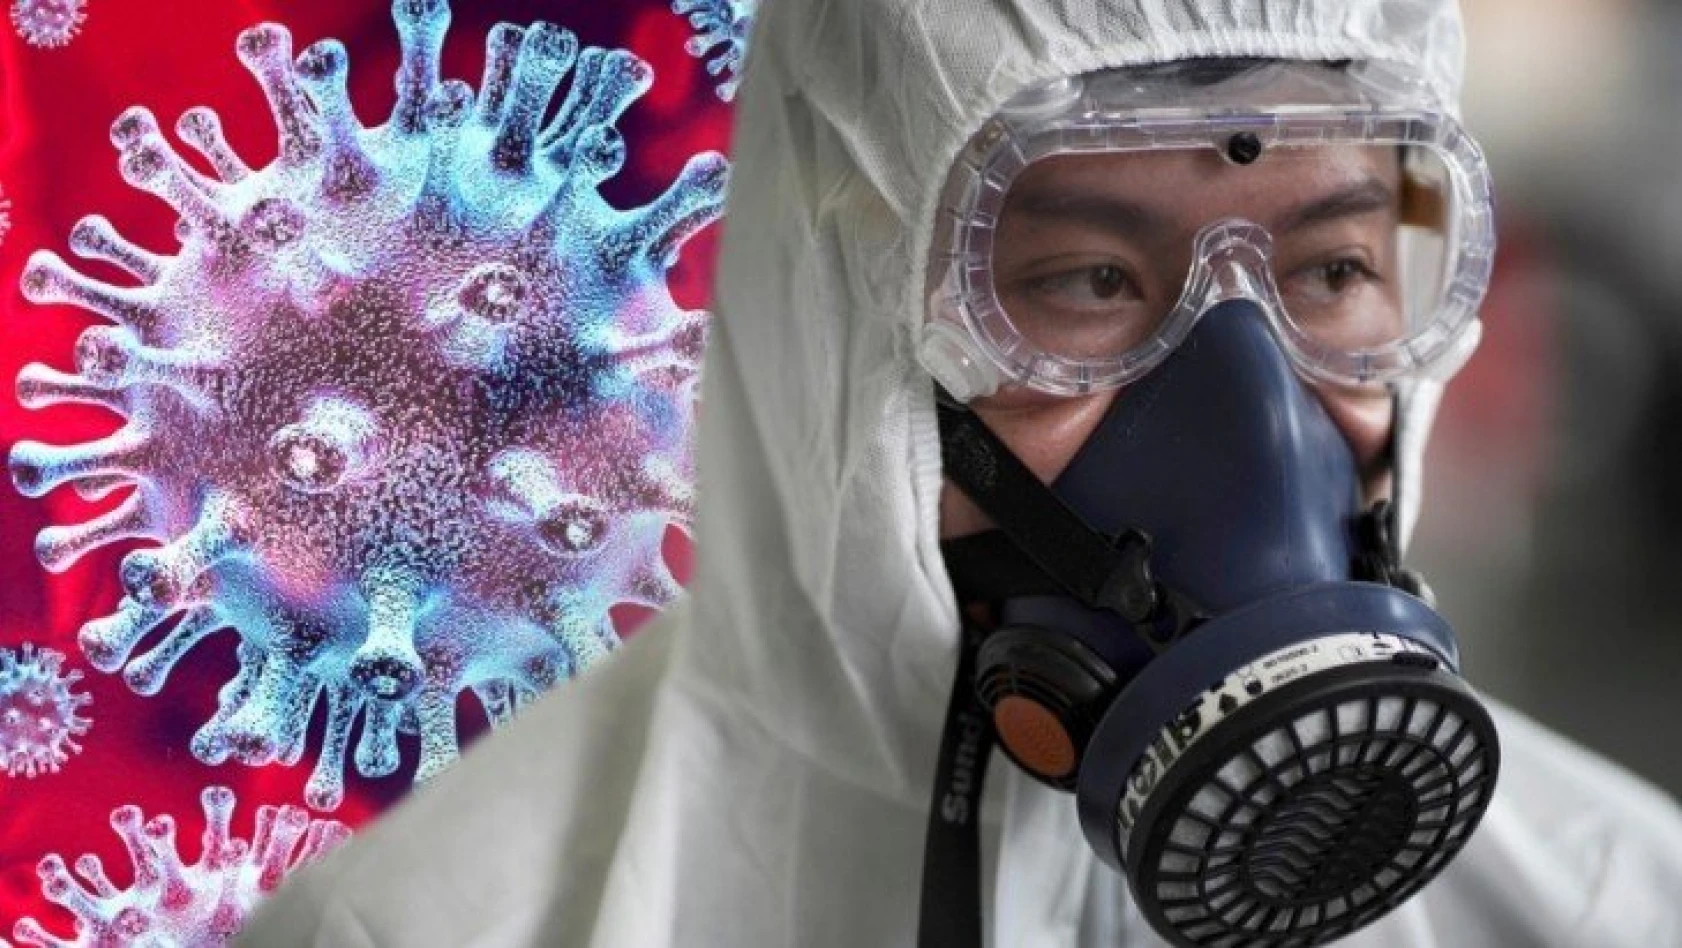 Çin'in koronavirüs belgeleri sızdı! Korona laboratuvar yapımı mı?